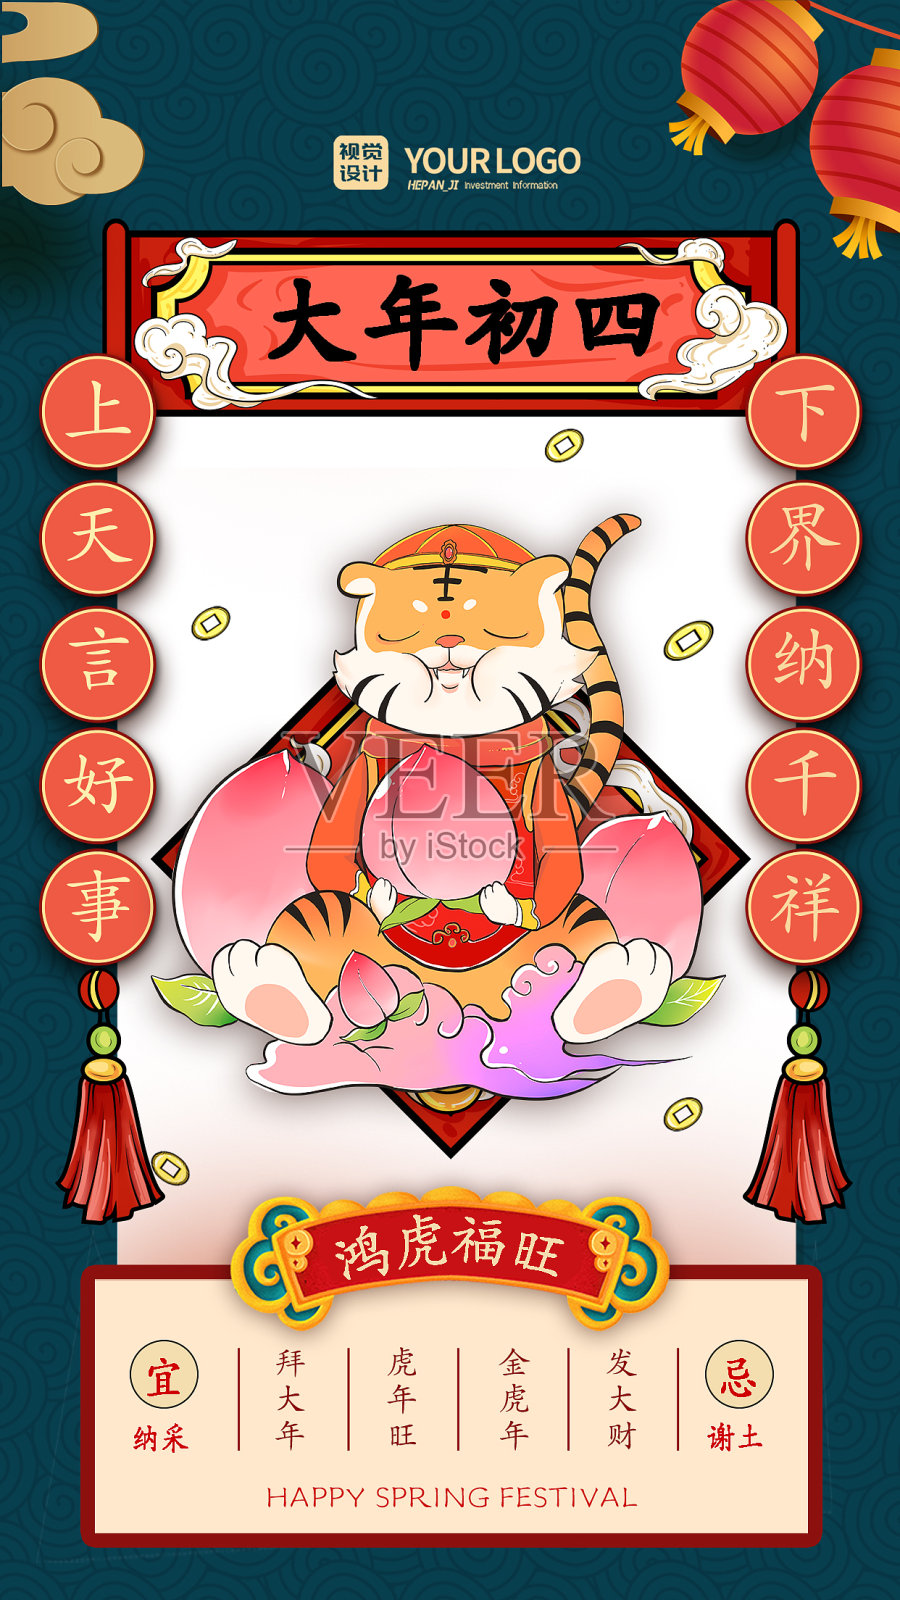 红色经典国潮风大年初四虎年春节系列手机海报设计模板素材